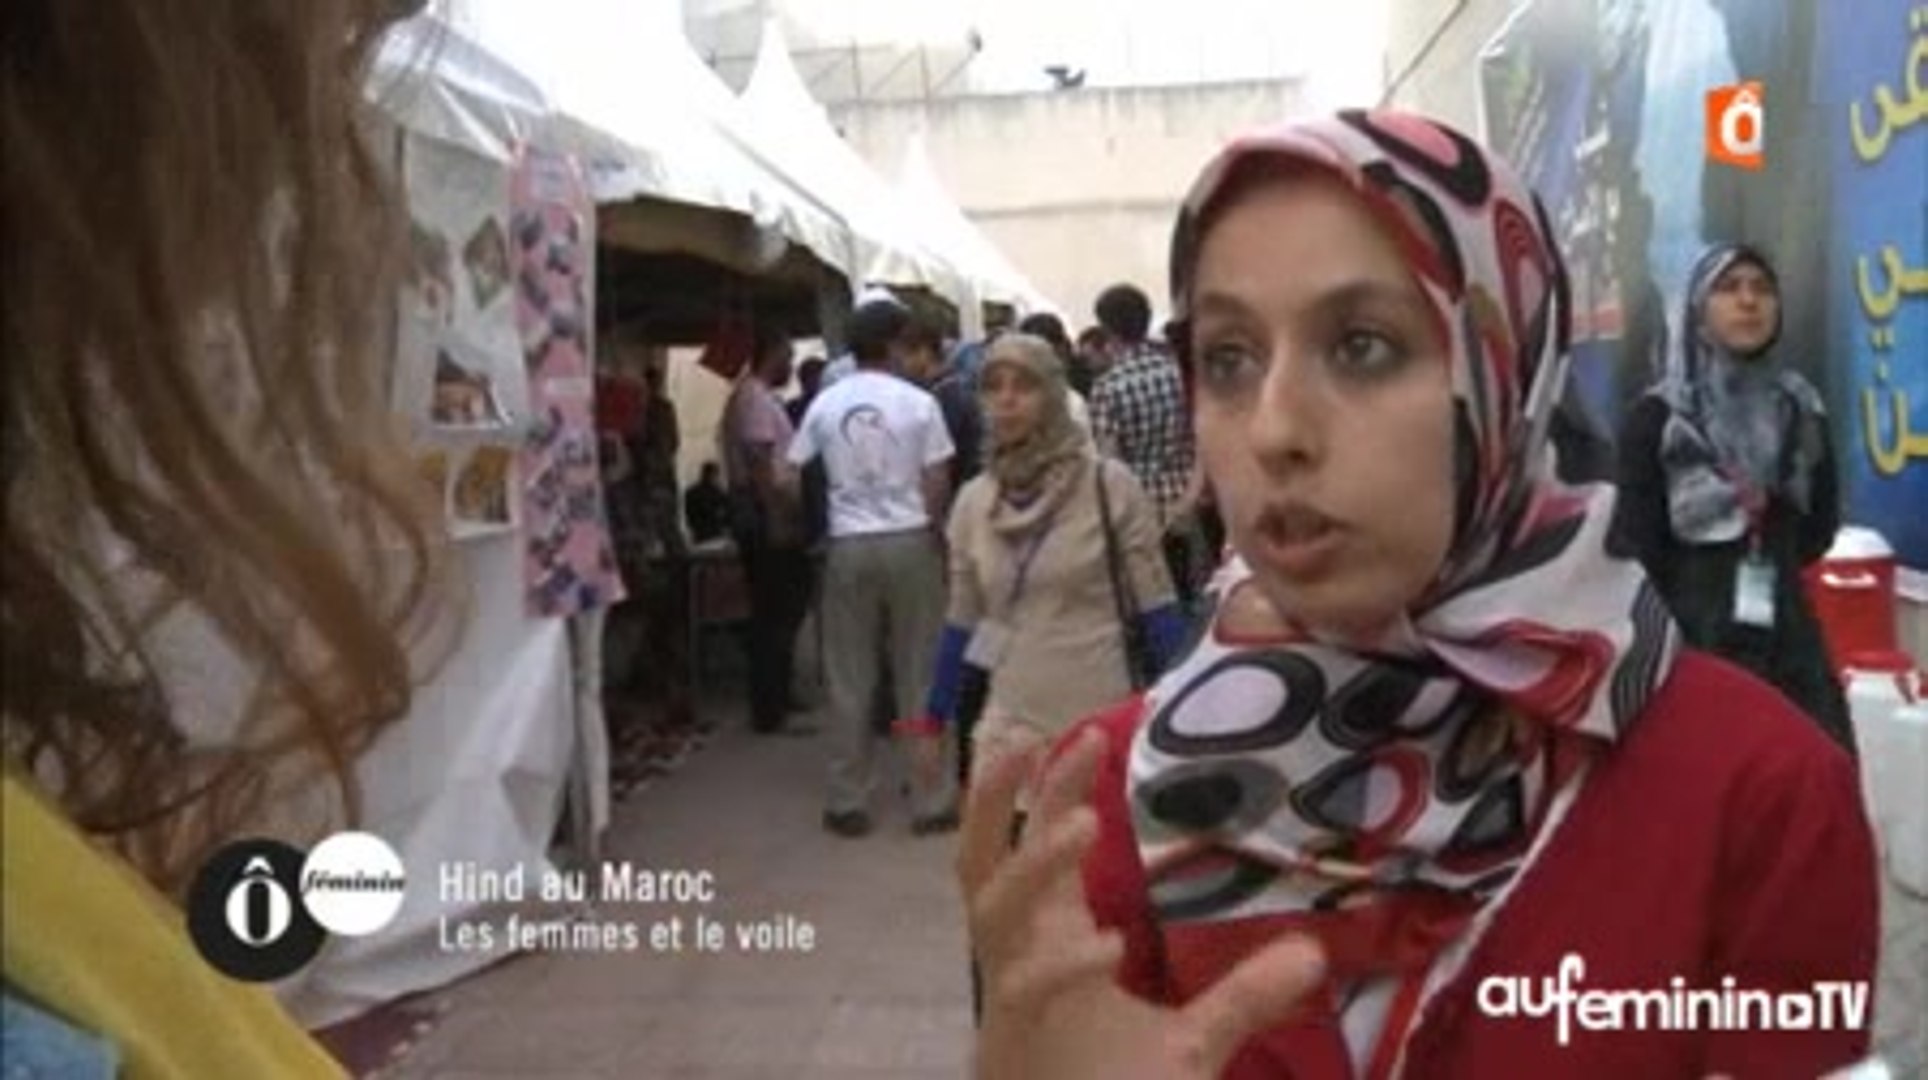 Le port du voile, une polémique qui continue au Maroc aussi - Vidéo  Dailymotion